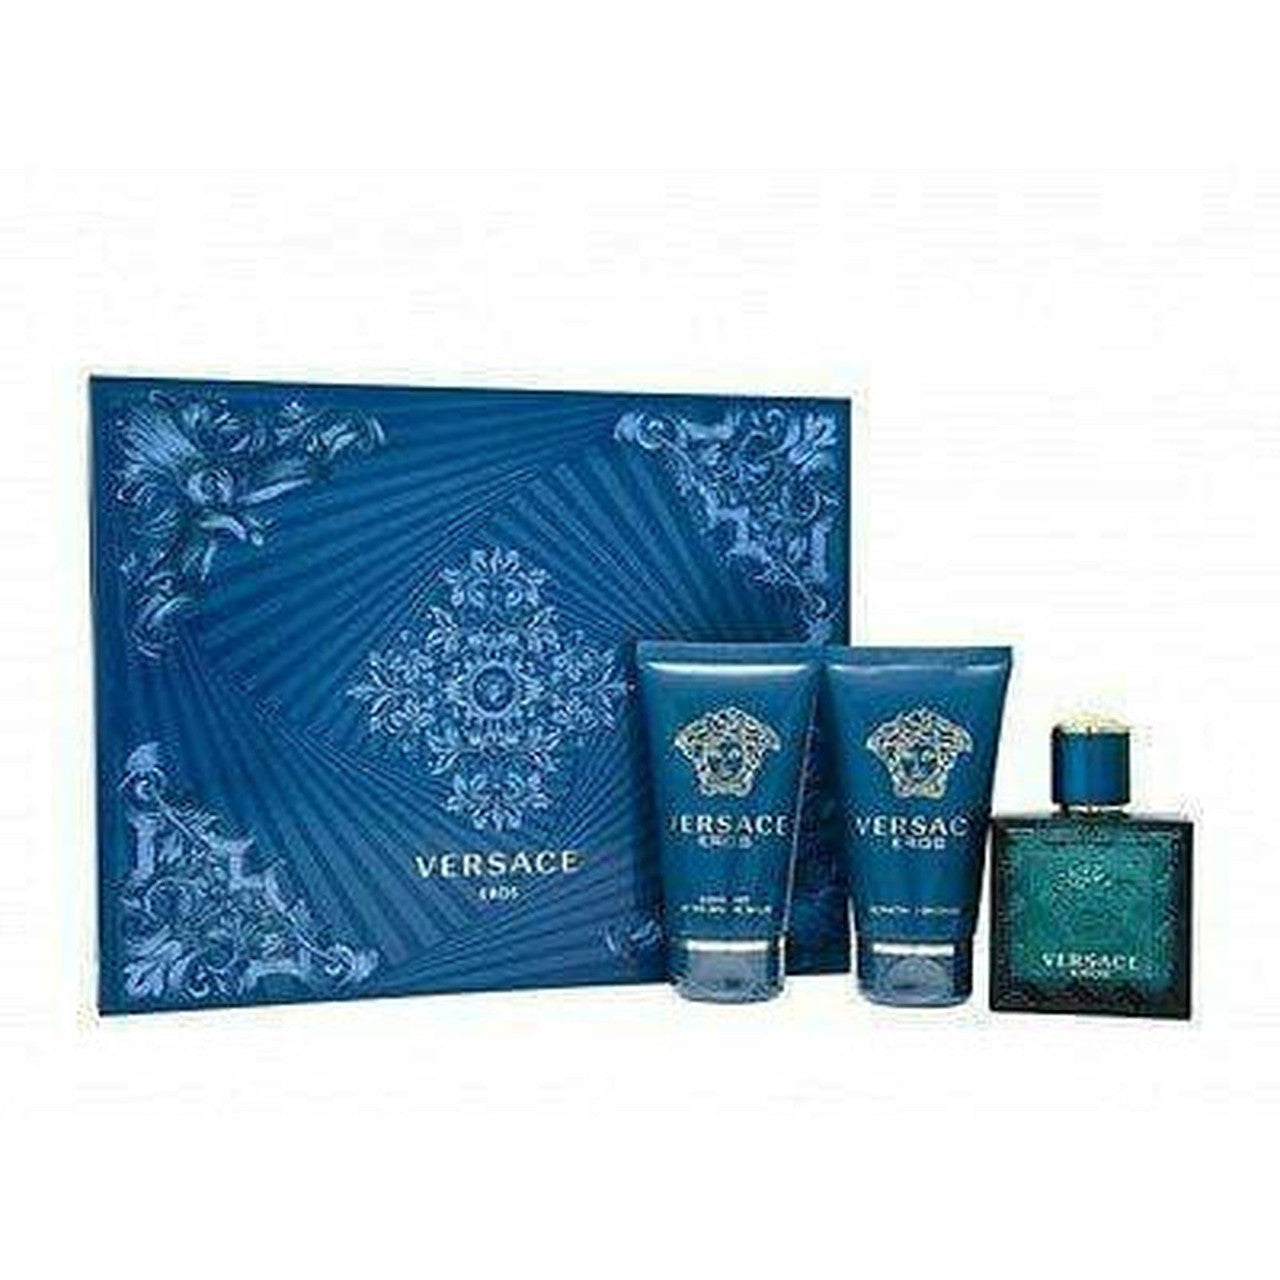 Versace Eros Gift Set 50ml EDT + 50ml Aftershave Balm + 50ml Shower Gel